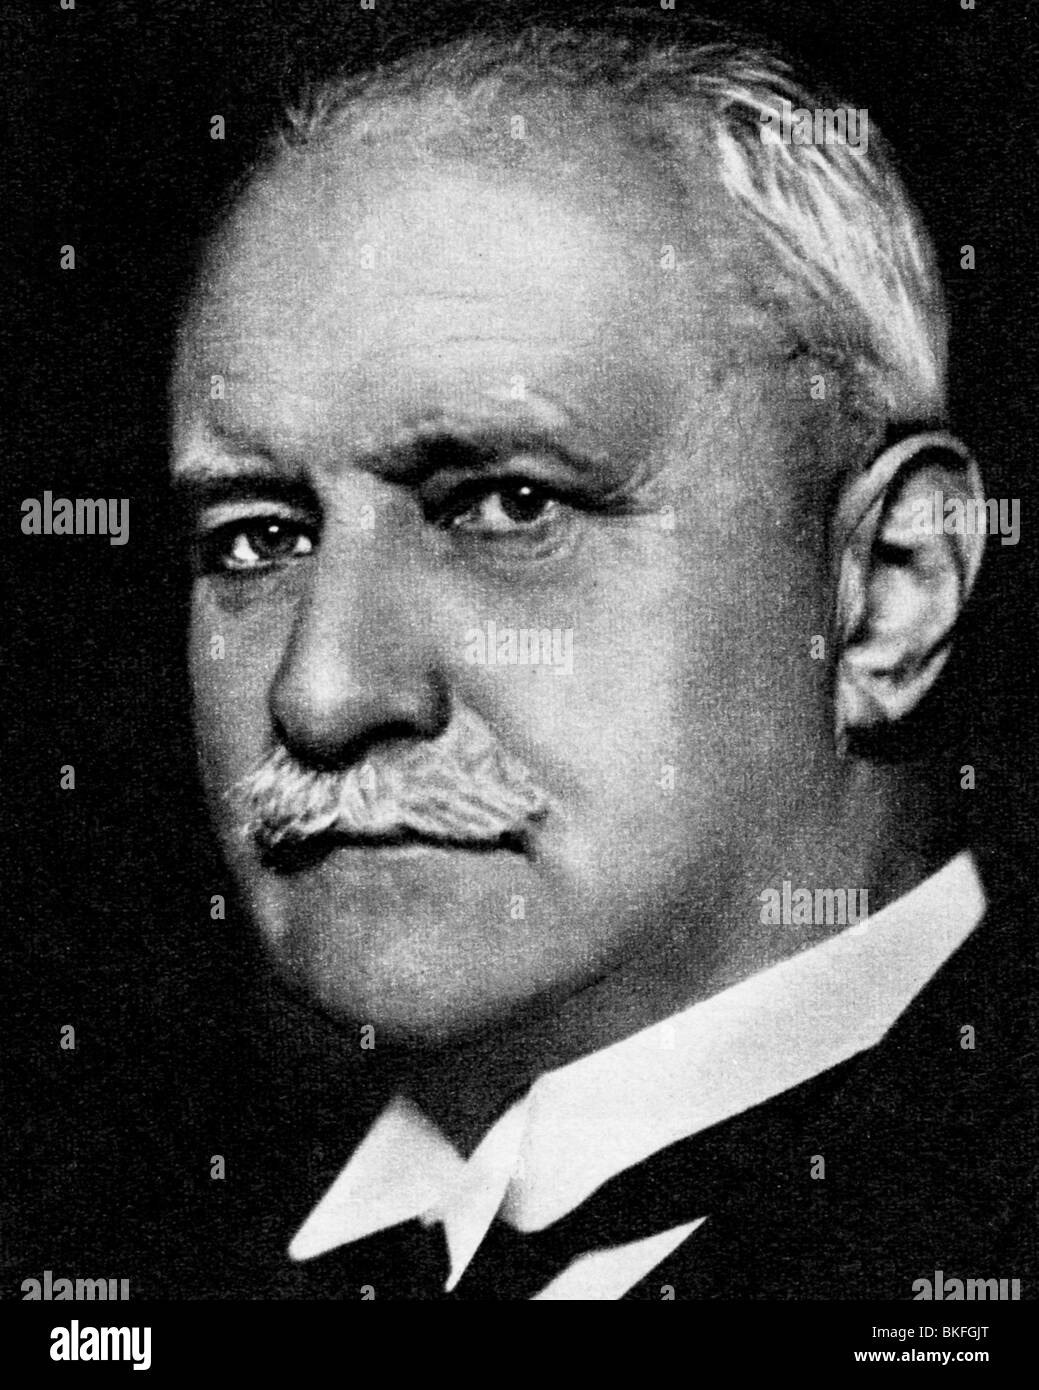 Bier, August, 24.11.1861 - 12. 3.1949, German physician, portrait, 1920s, , Stock Photo